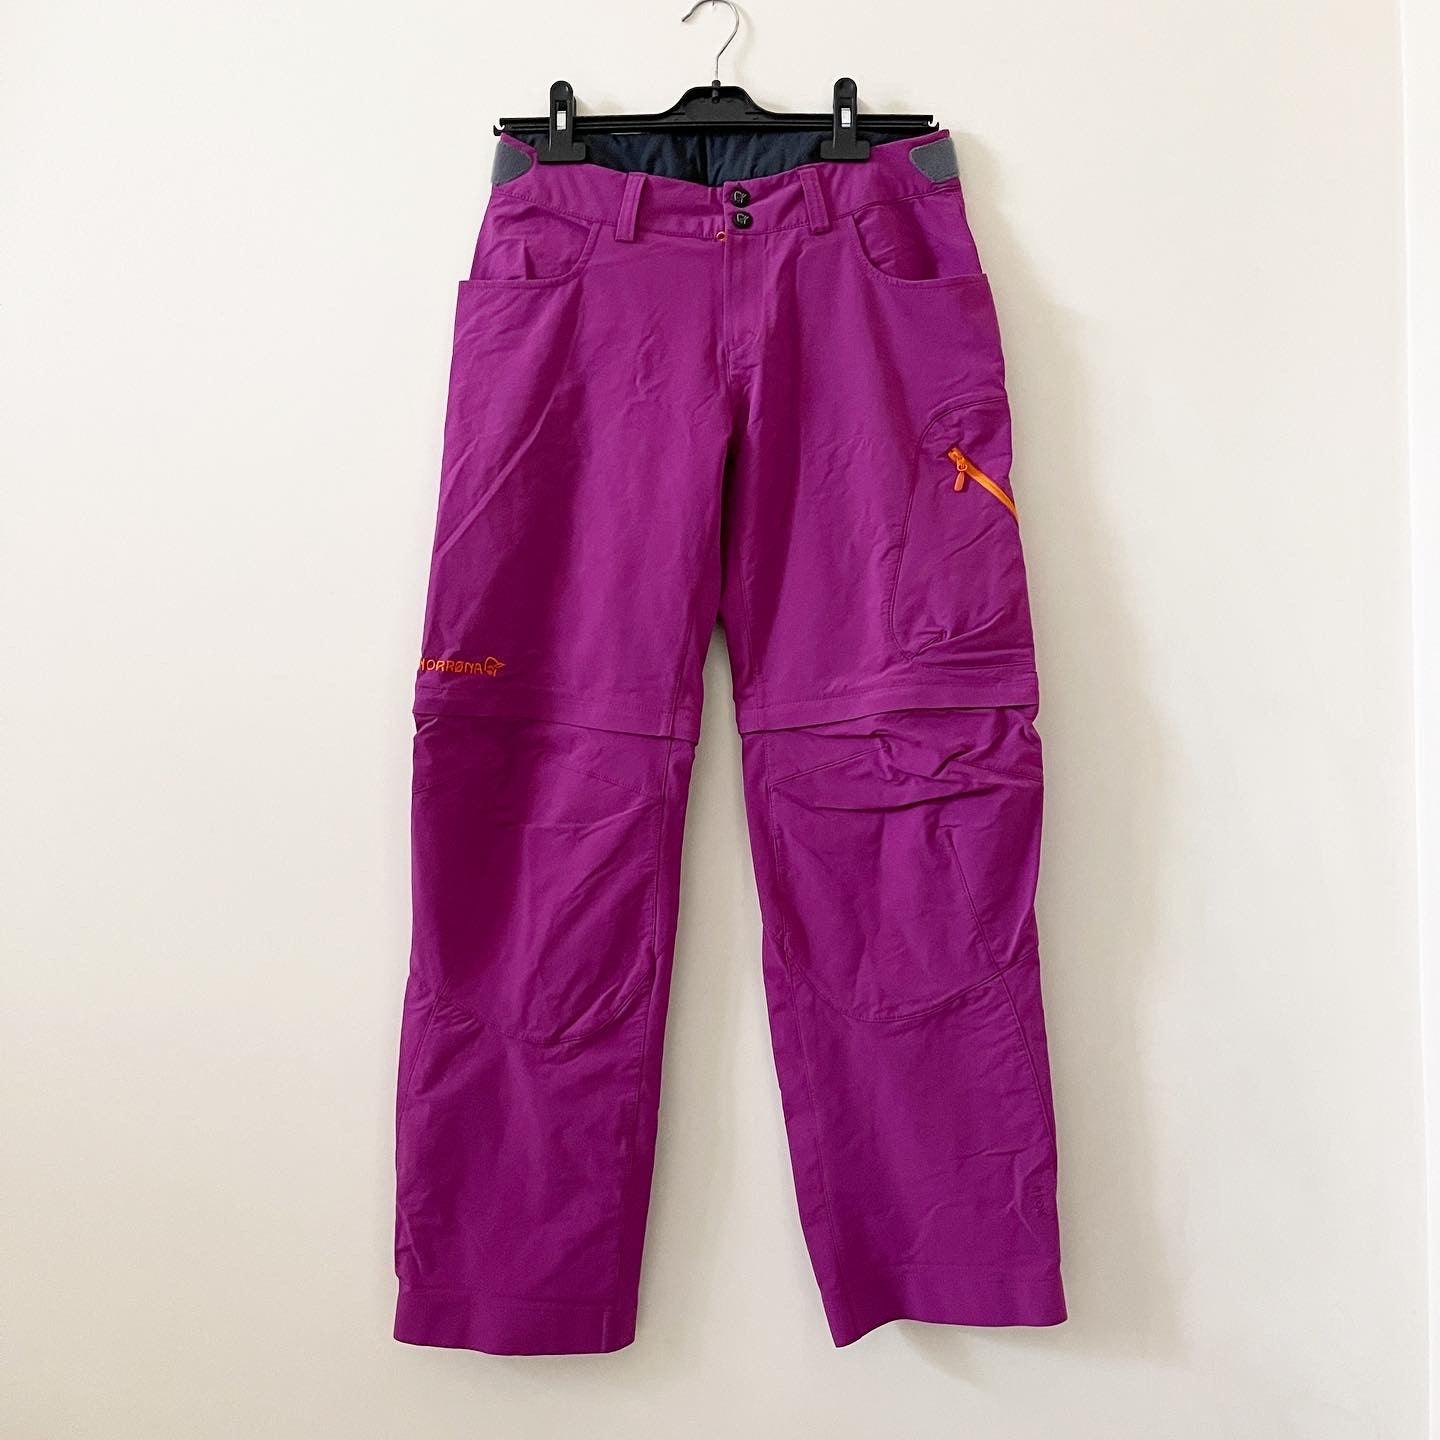 NORRONA - NORRONA Bitihorn pants/shorts - AVVIIVVA.COM